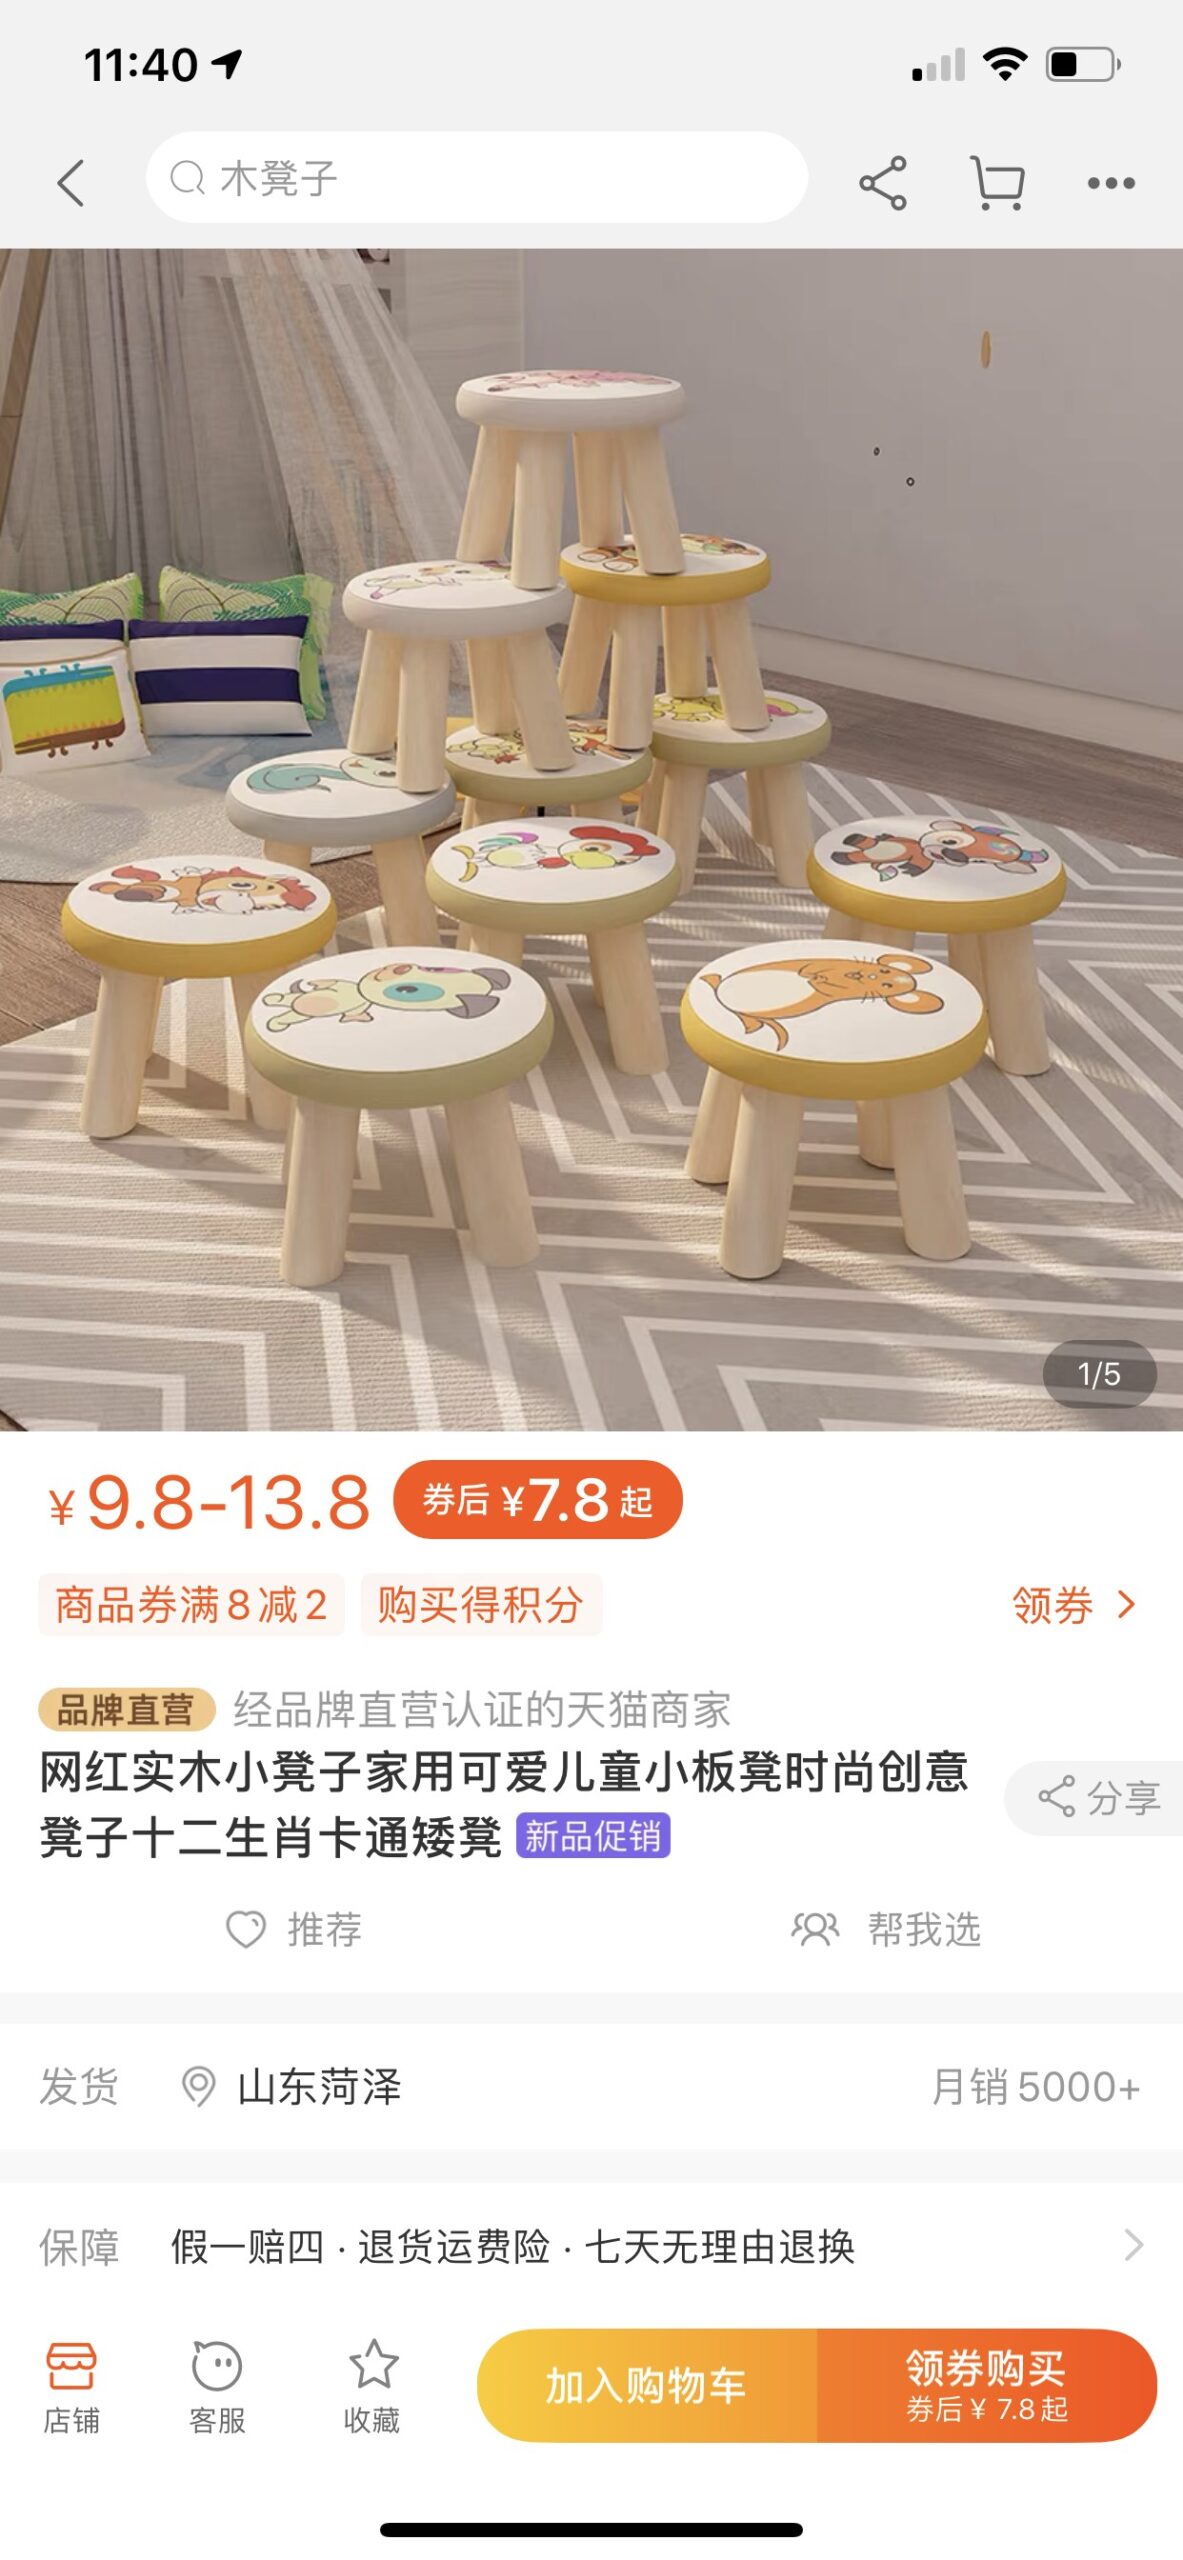 Lợi ích khi tìm kiếm sản phẩm bằng hình ảnh trên app Taobao